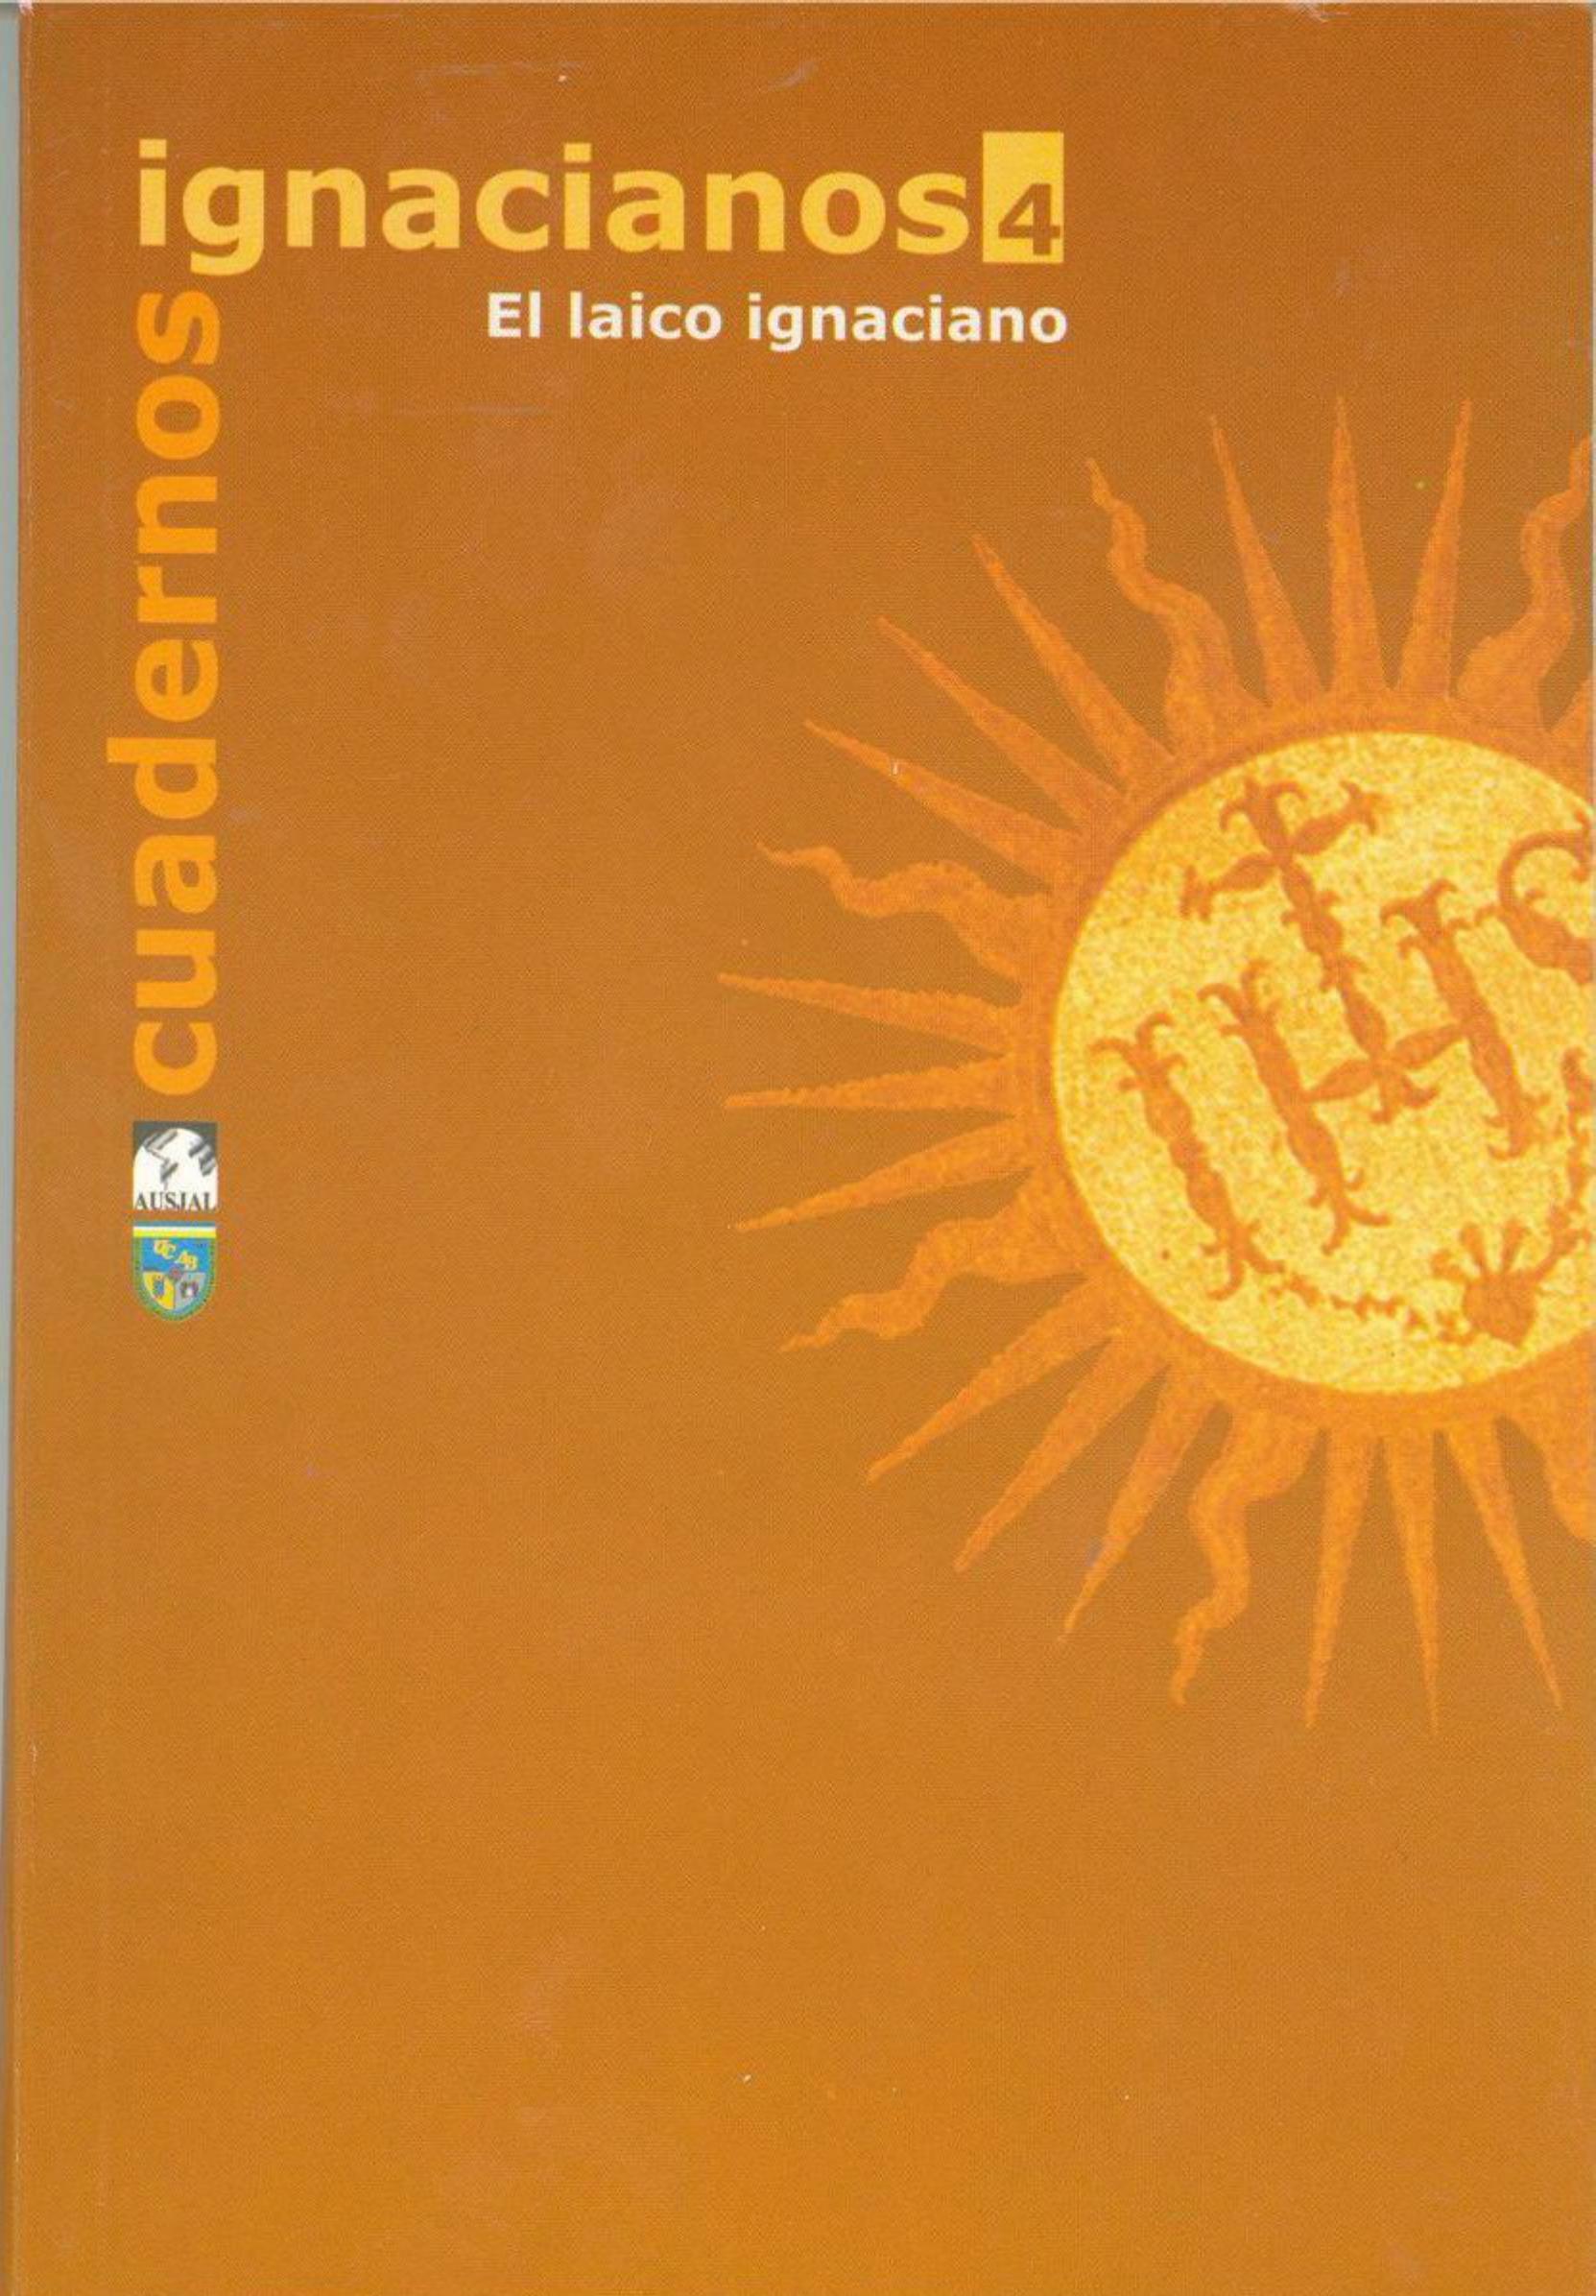                     Ver Núm. 4 (2002): Cuadernos Ignacianos
                